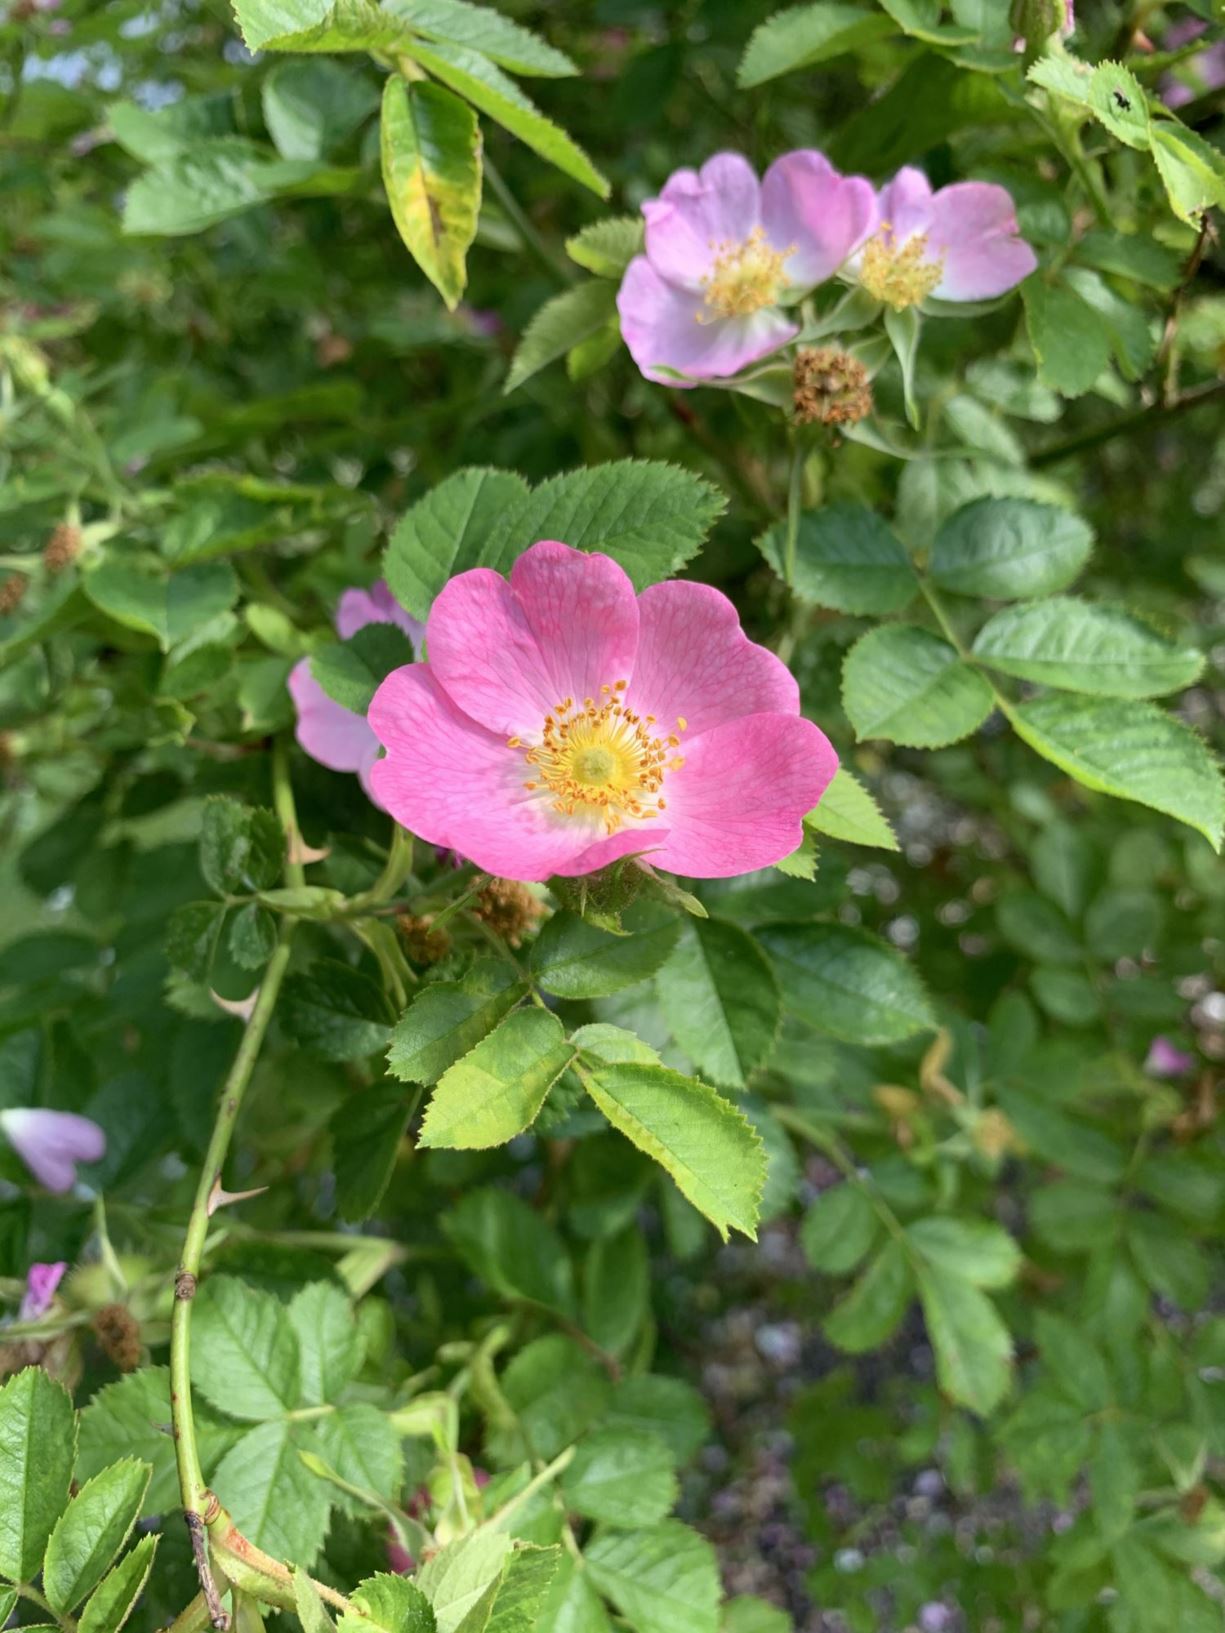 Rosa rubiginosa - Eplerose, vinrose, engeltorn, eddikrose